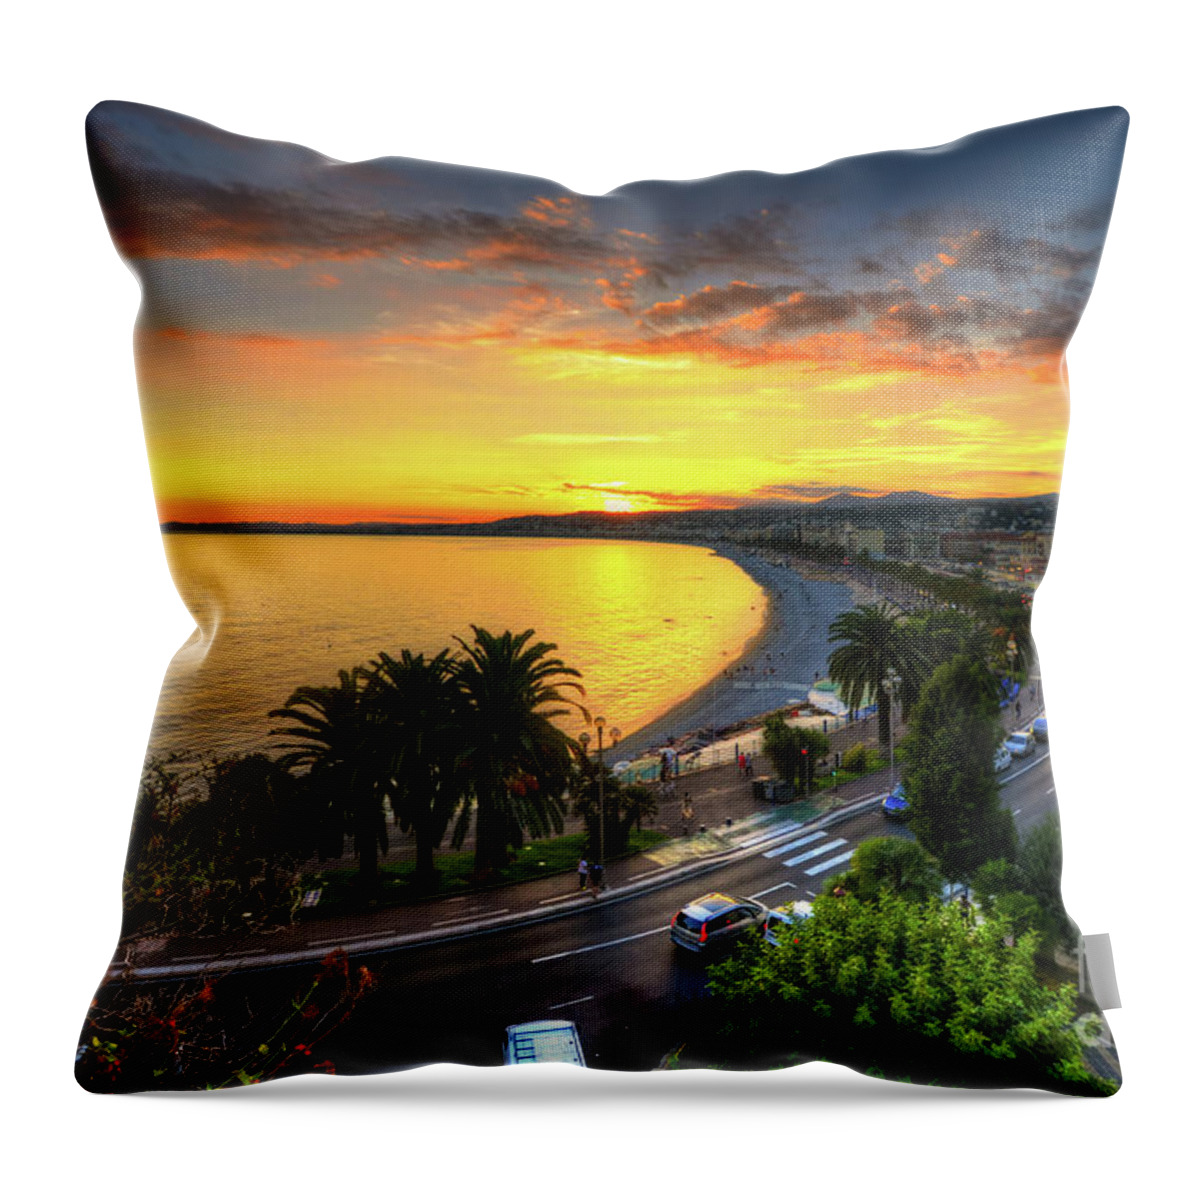 Yhun Suarez Throw Pillow featuring the photograph Sunset At Nice by Yhun Suarez